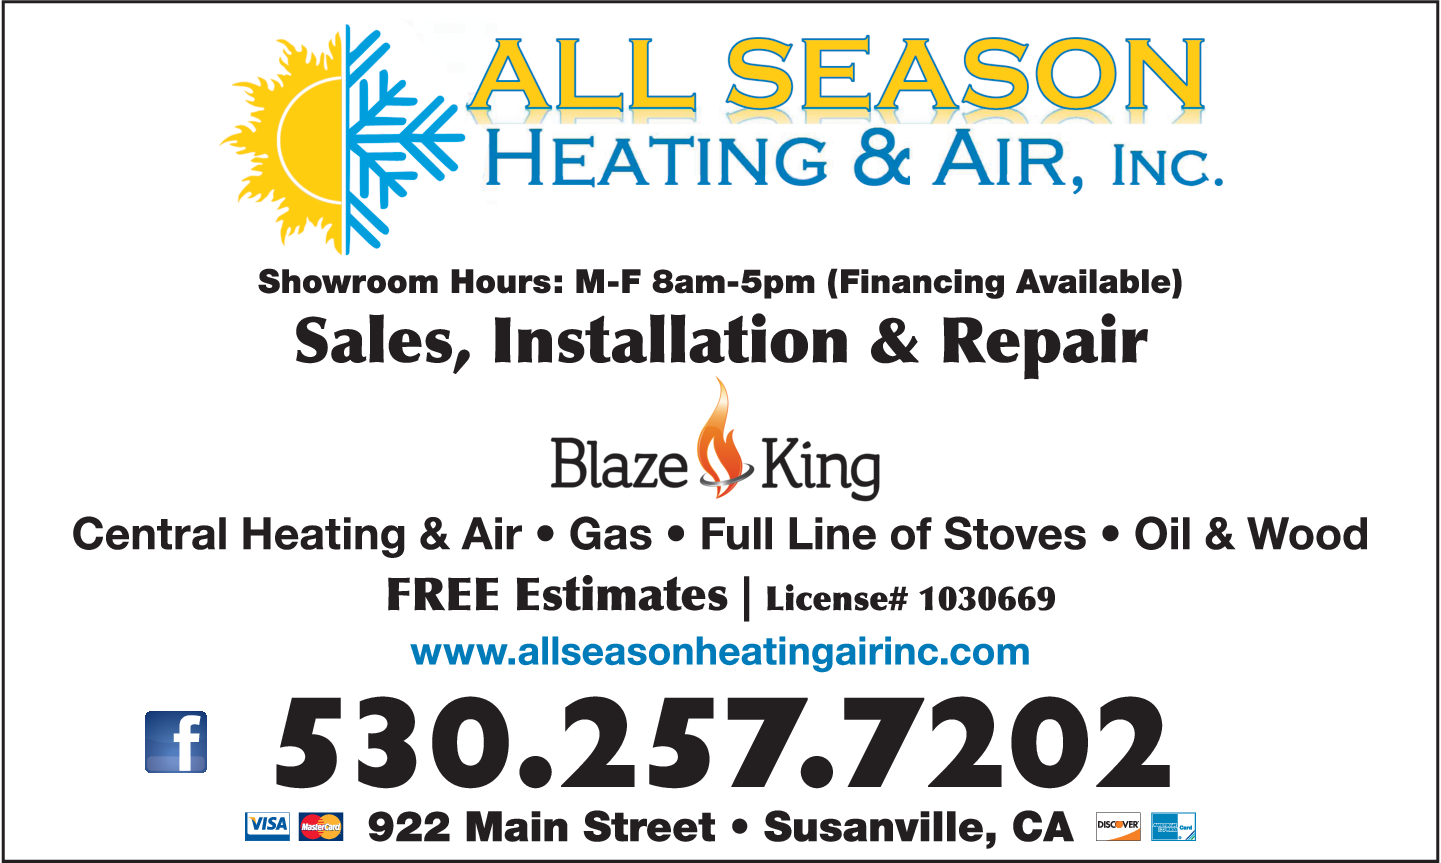 All Season Heating & Air Inc